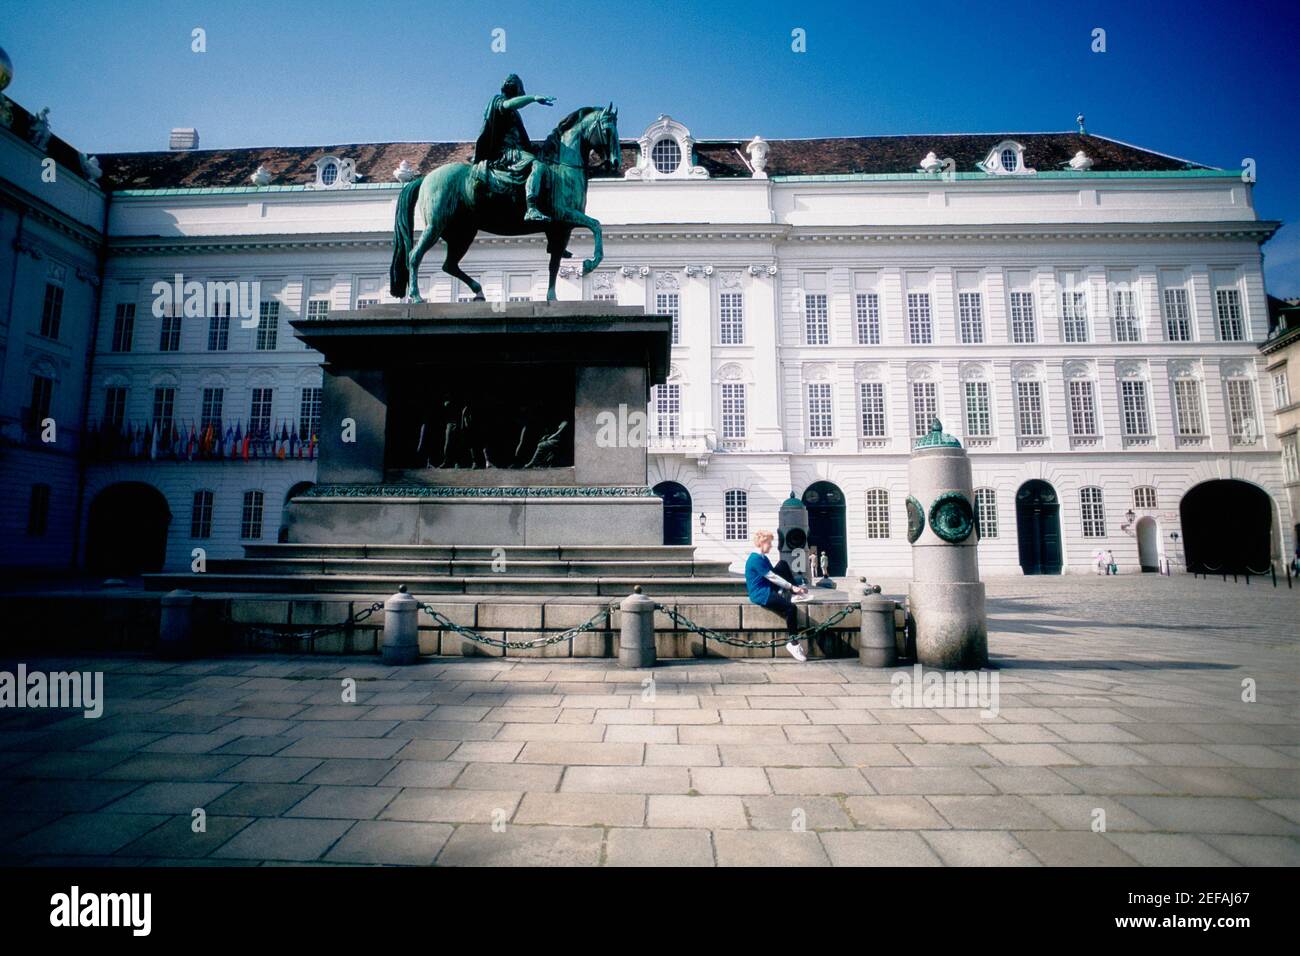 Statue vor einem Gebäude, Josefsplatz, Wien, Österreich Stockfotografie -  Alamy